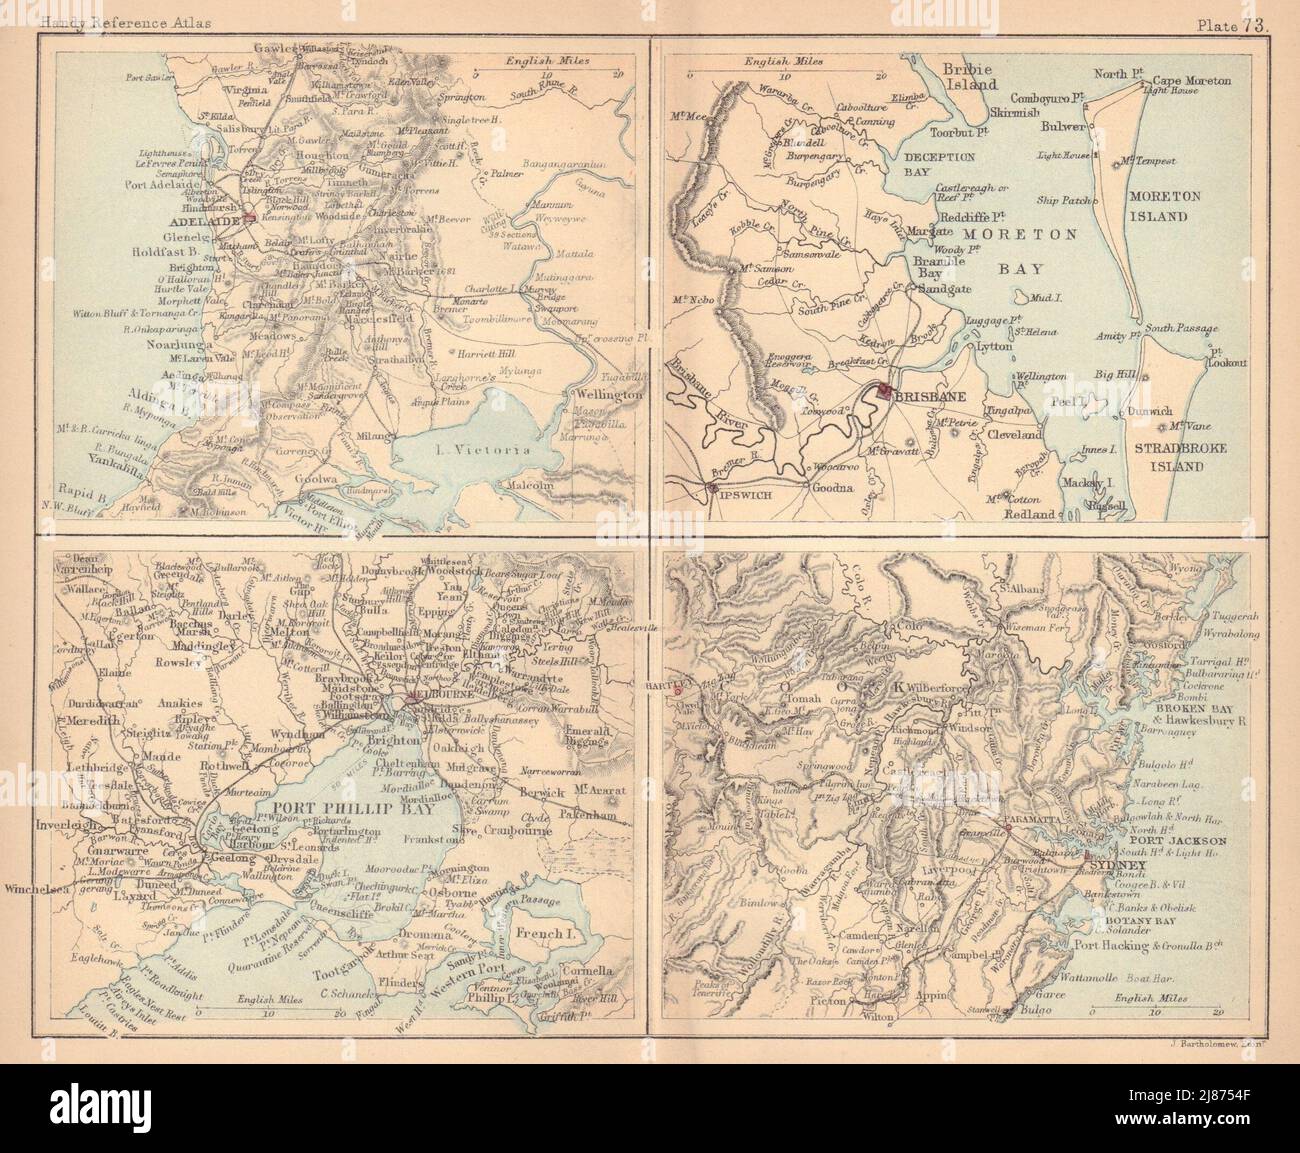 Adelaide, Brisbane, Melbourne & Sydney. Australian cities. BARTHOLOMEW 1888 map Stock Photo